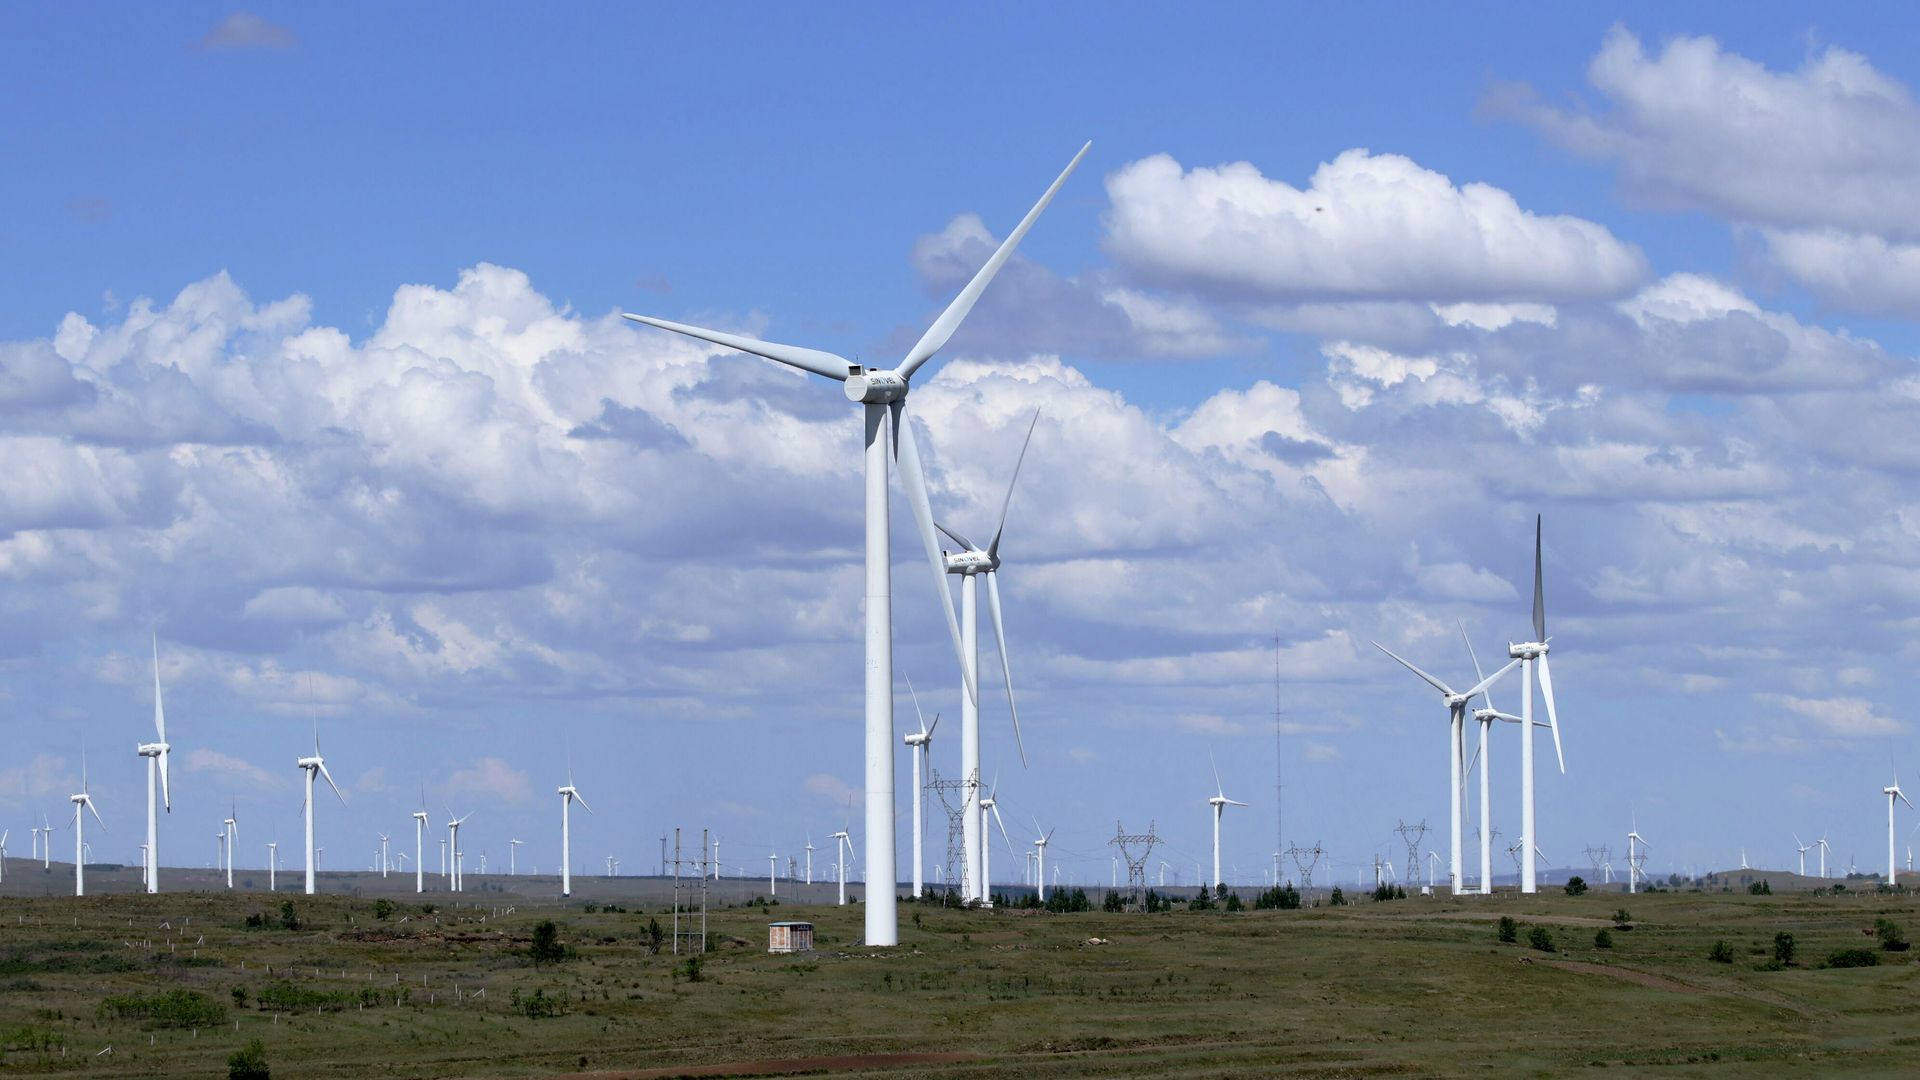 A wind turbine plant